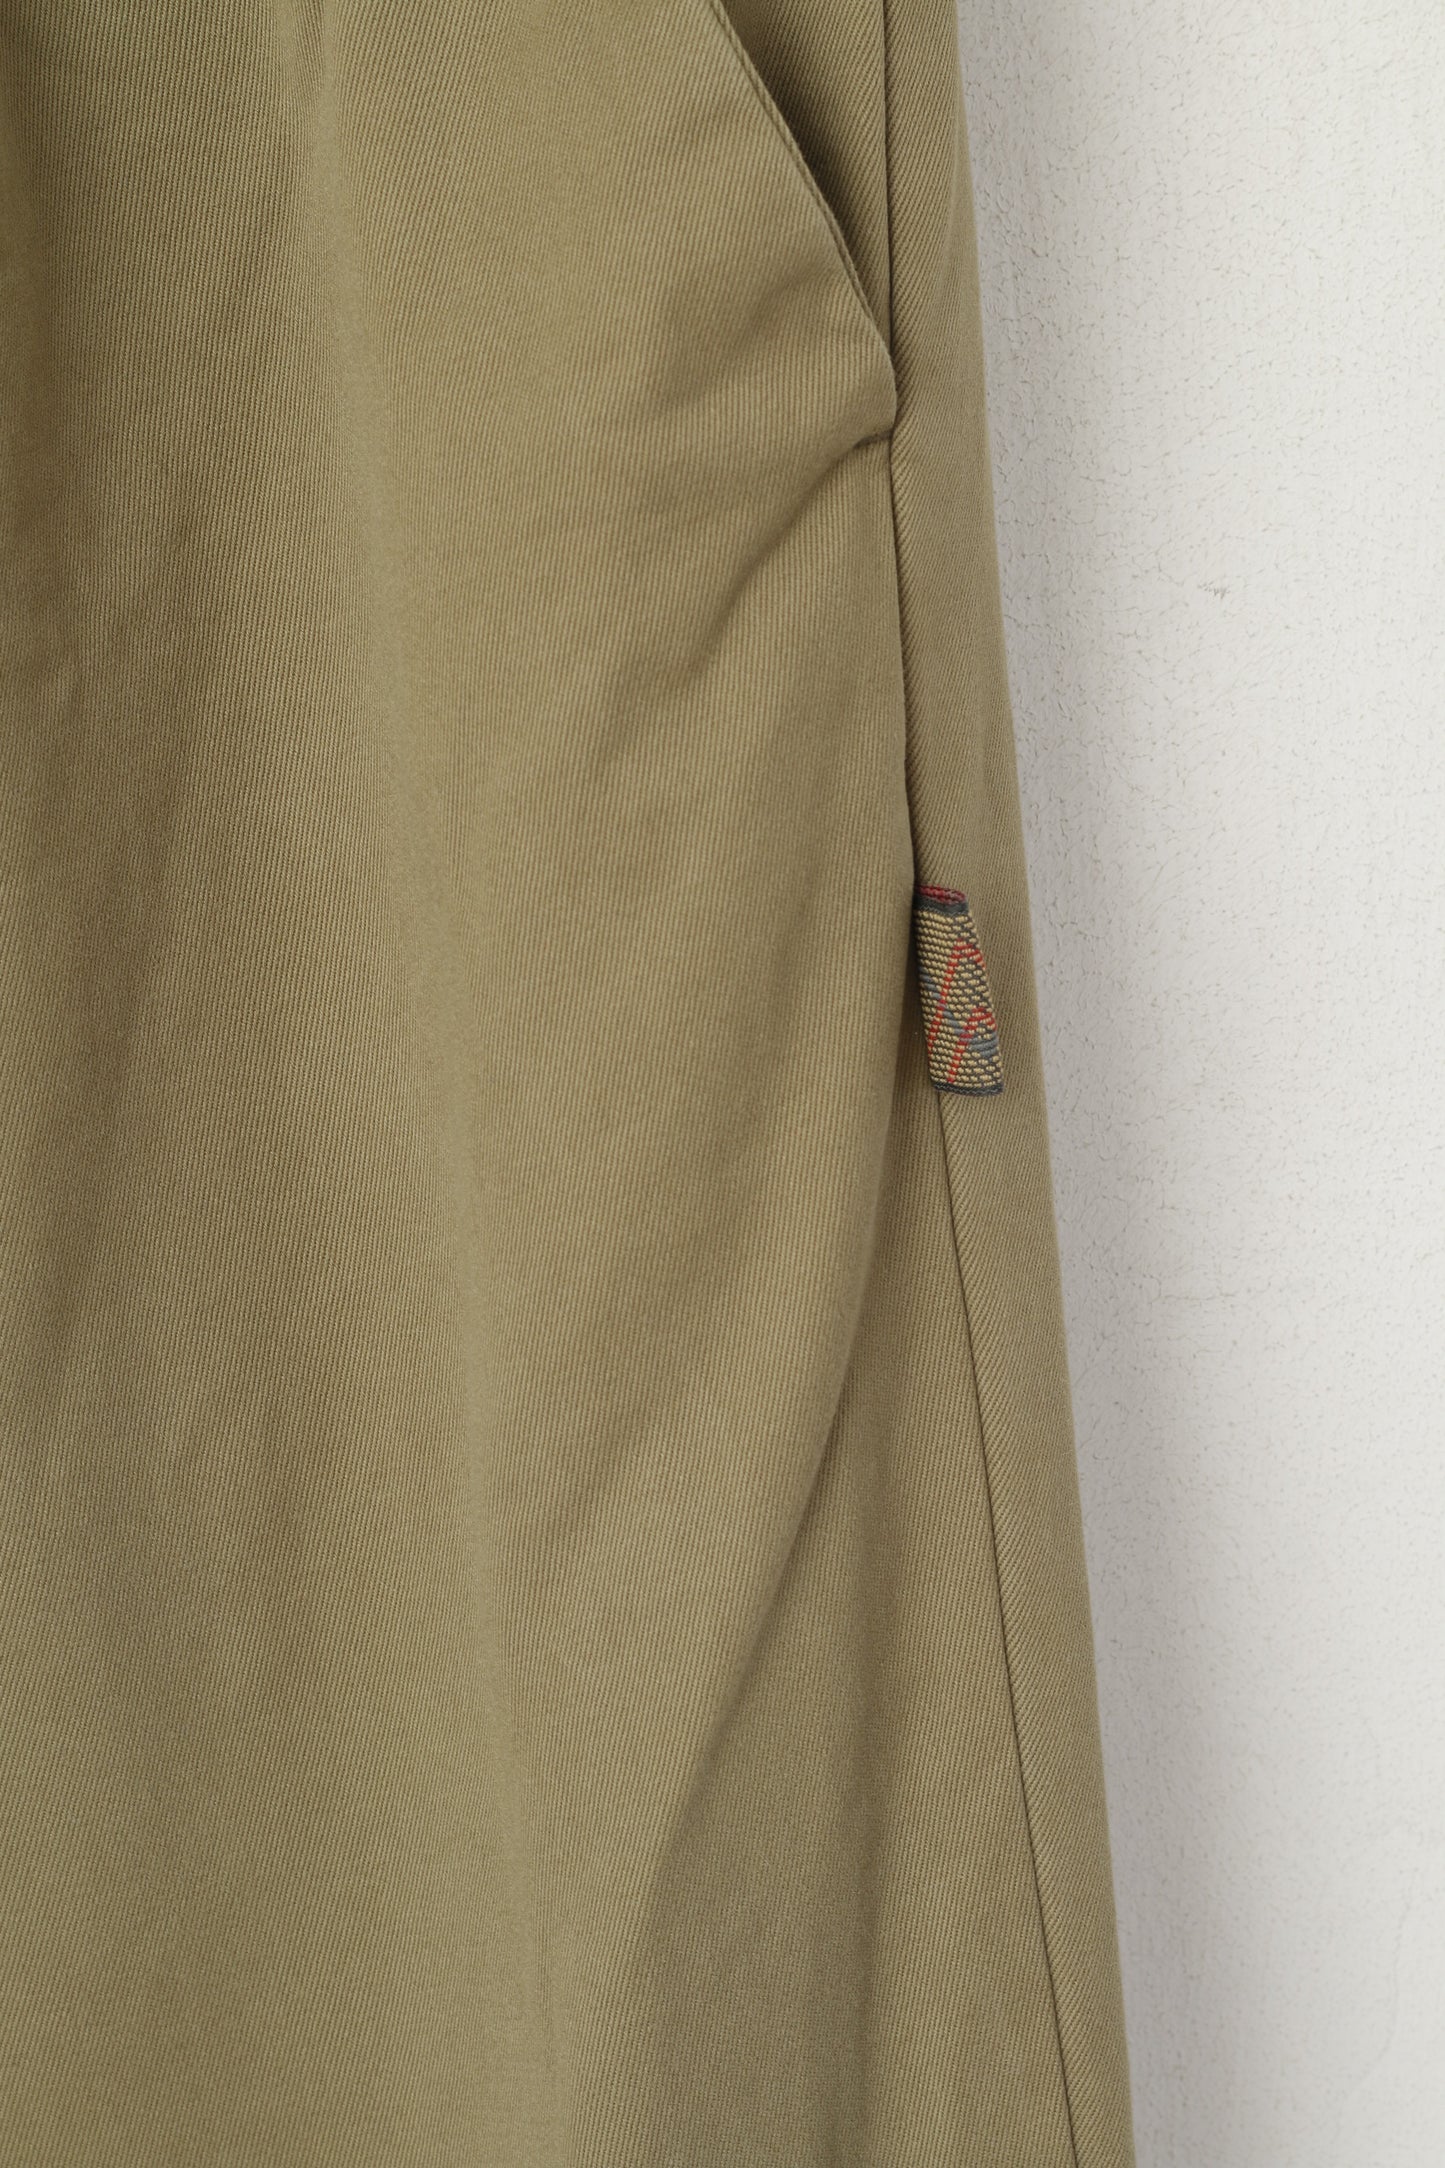 Pantaloni Barbour da uomo 34 Pantaloni casual chino classici in cotone 100% verde